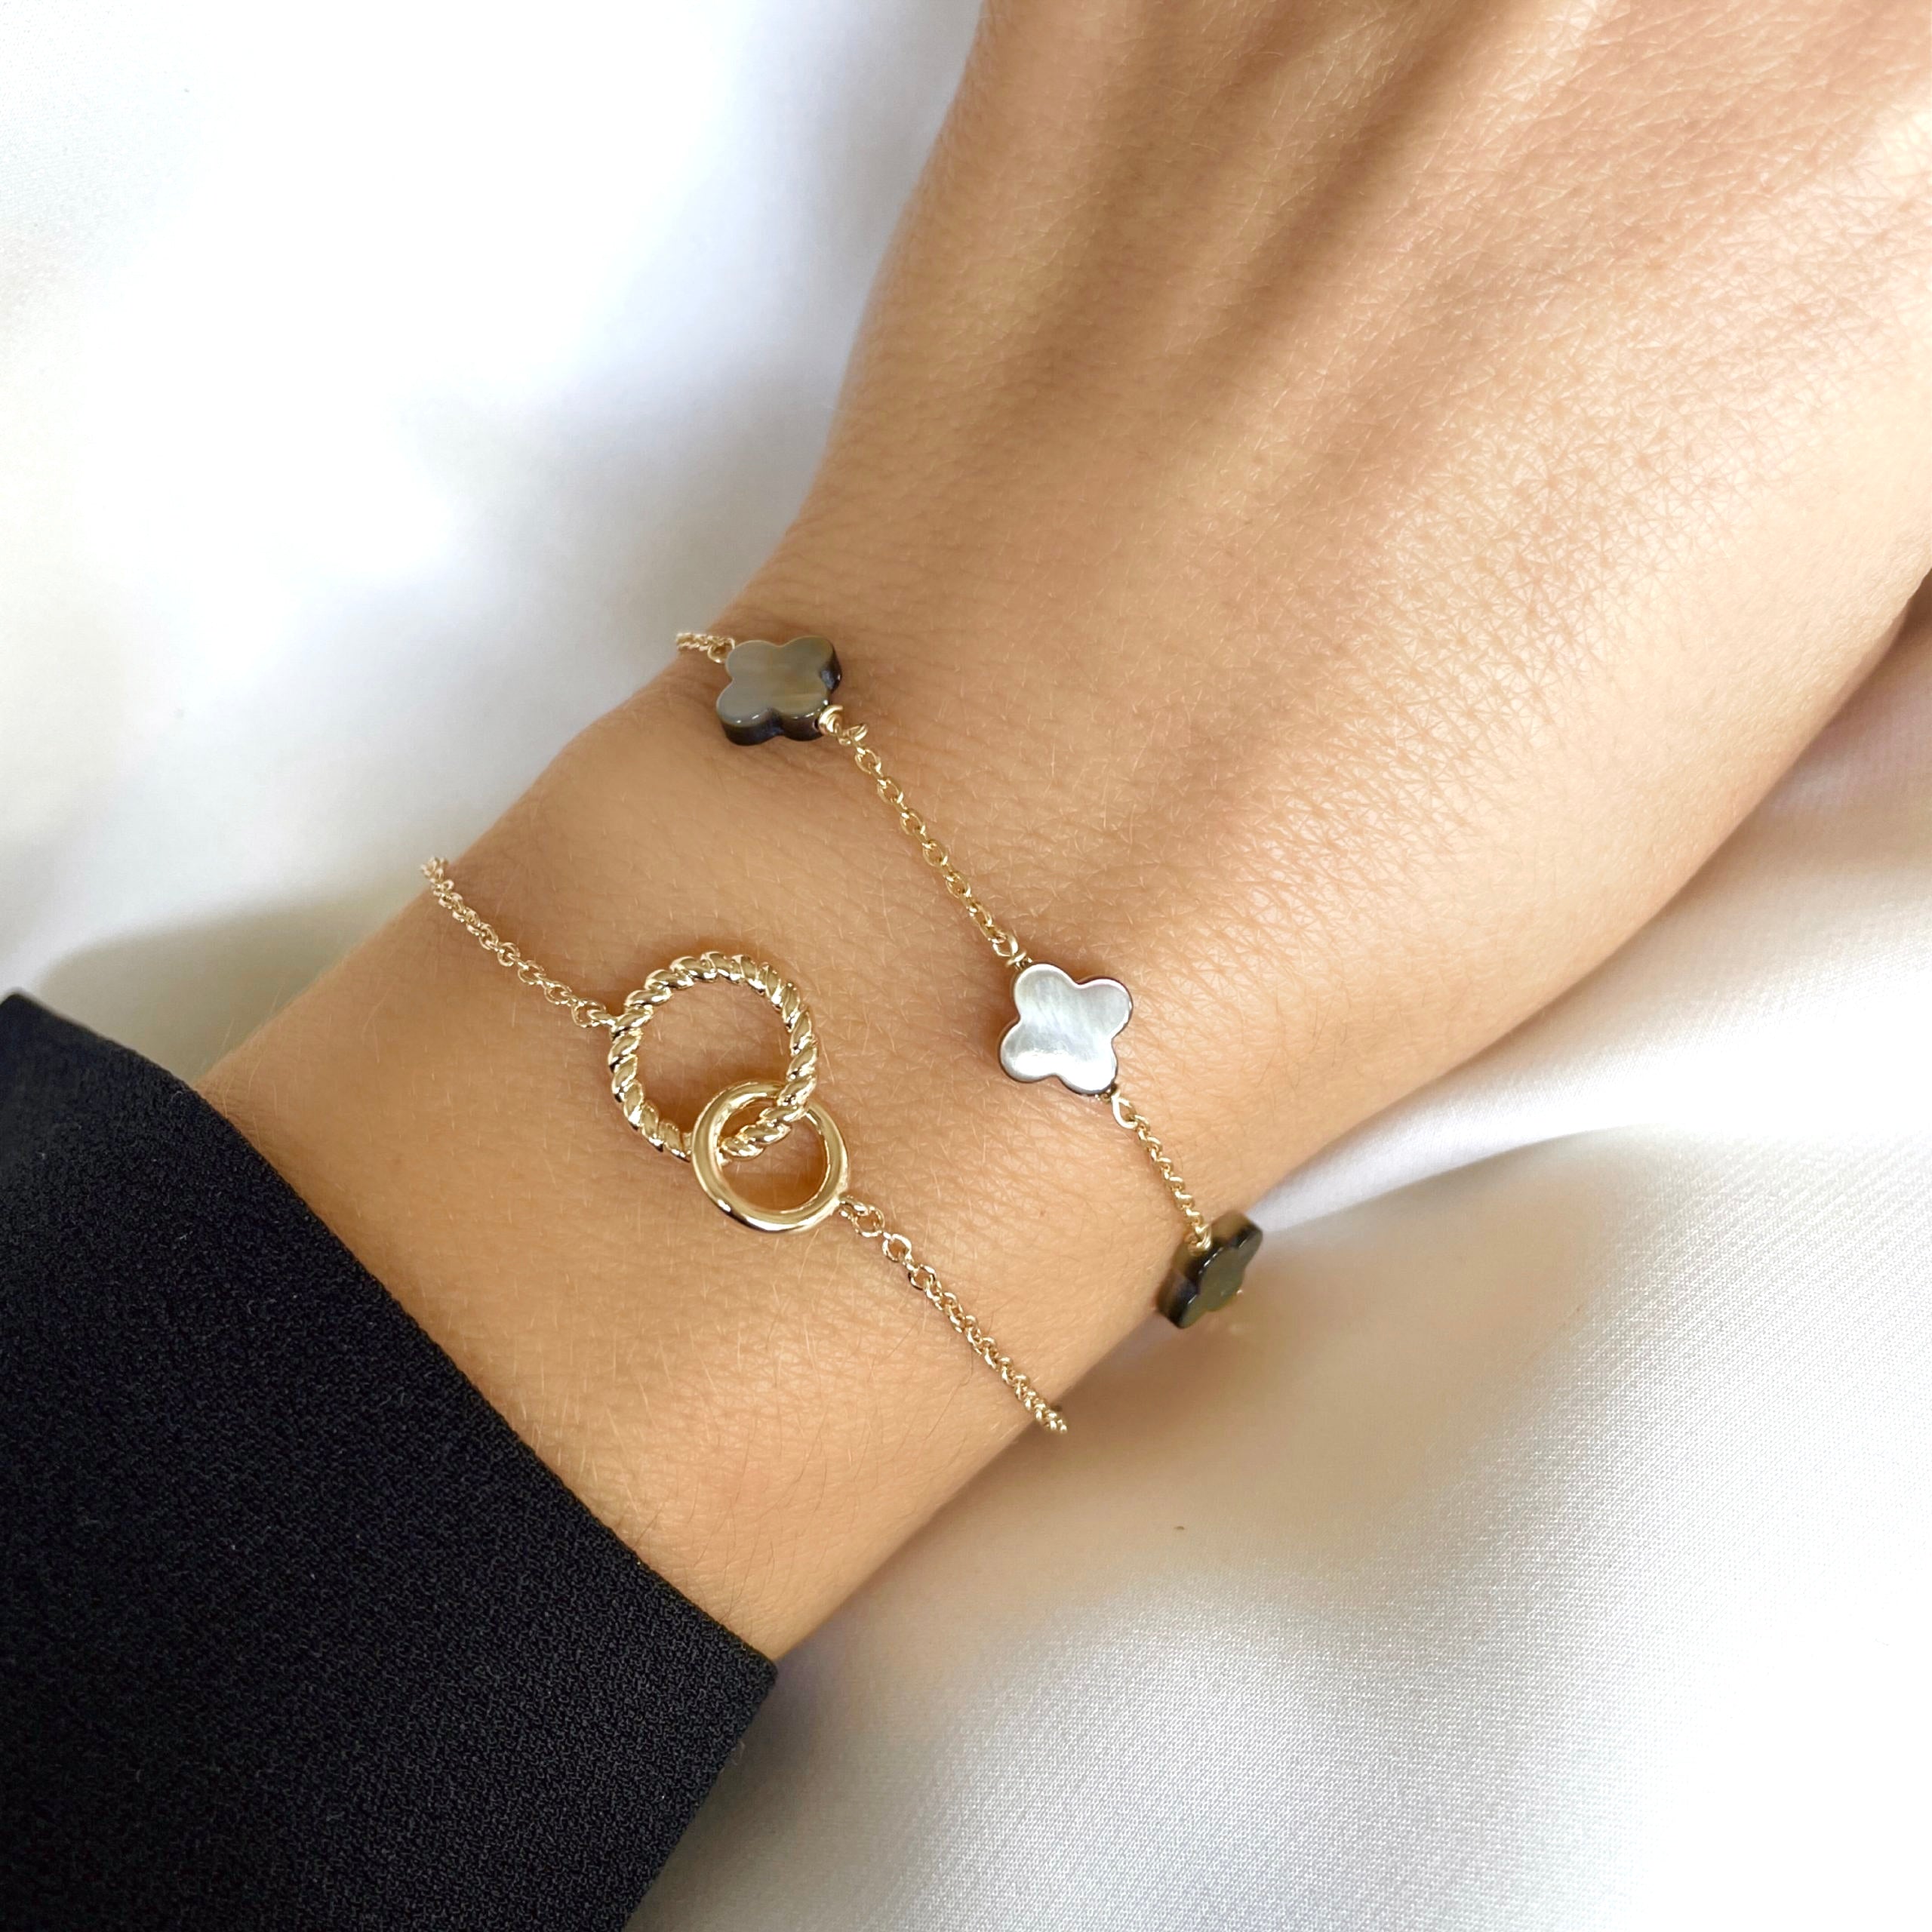 Gold-plated “5 Clover” bracelet